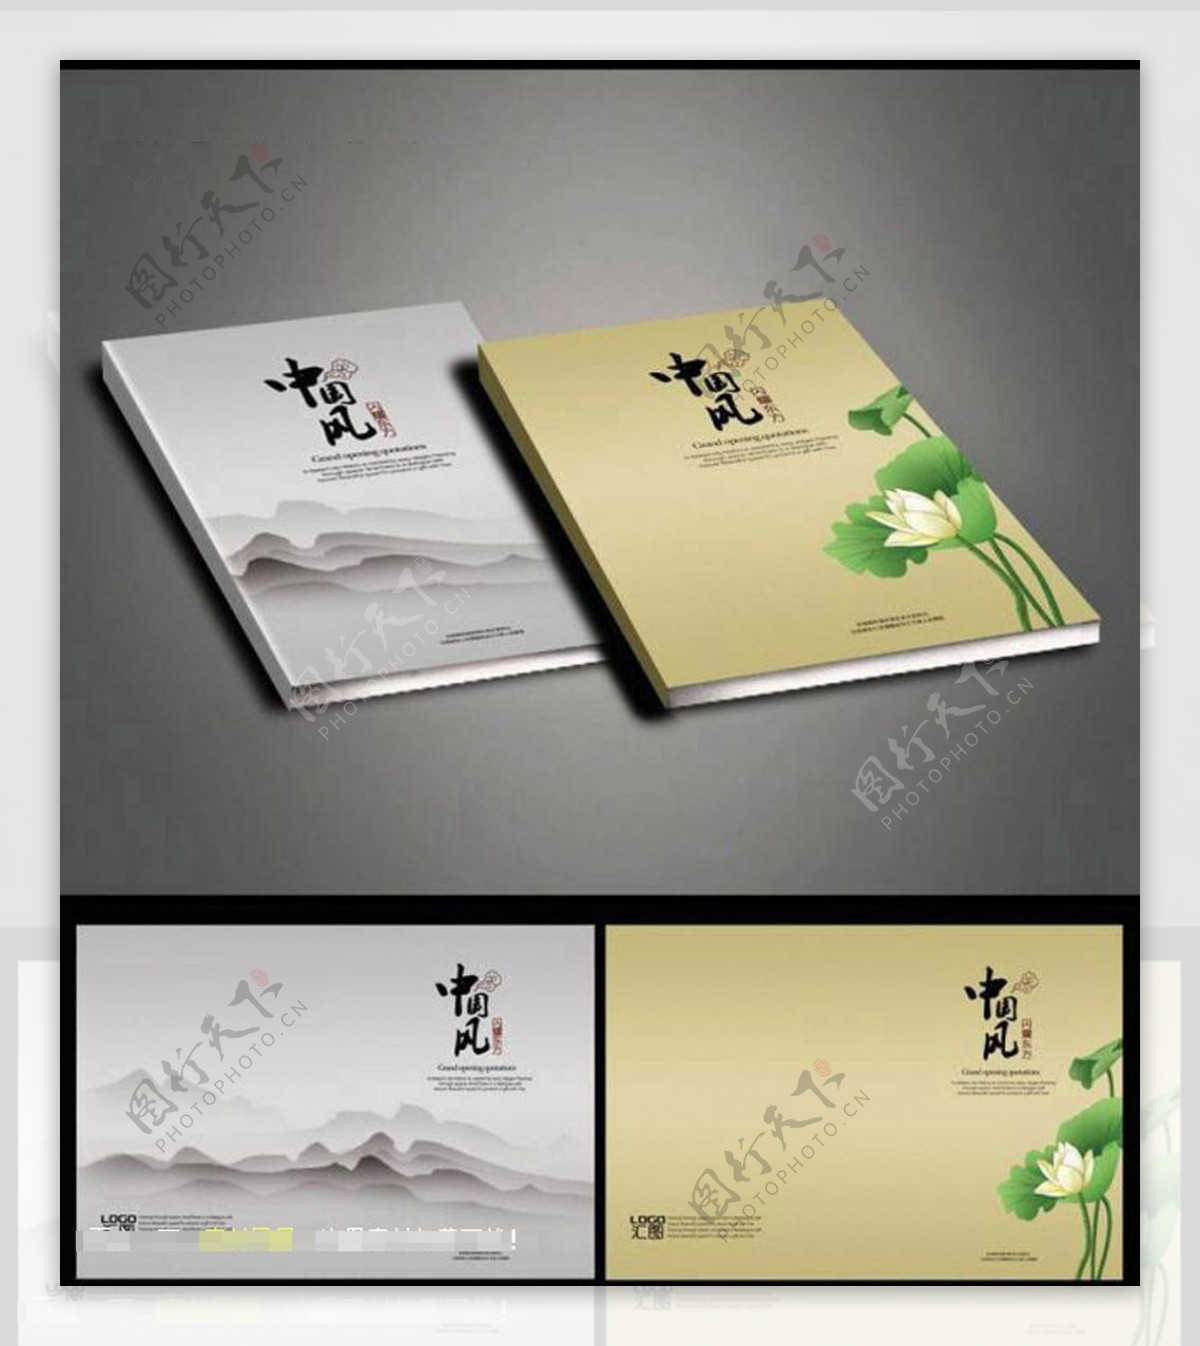 中国风画册封面画册设计